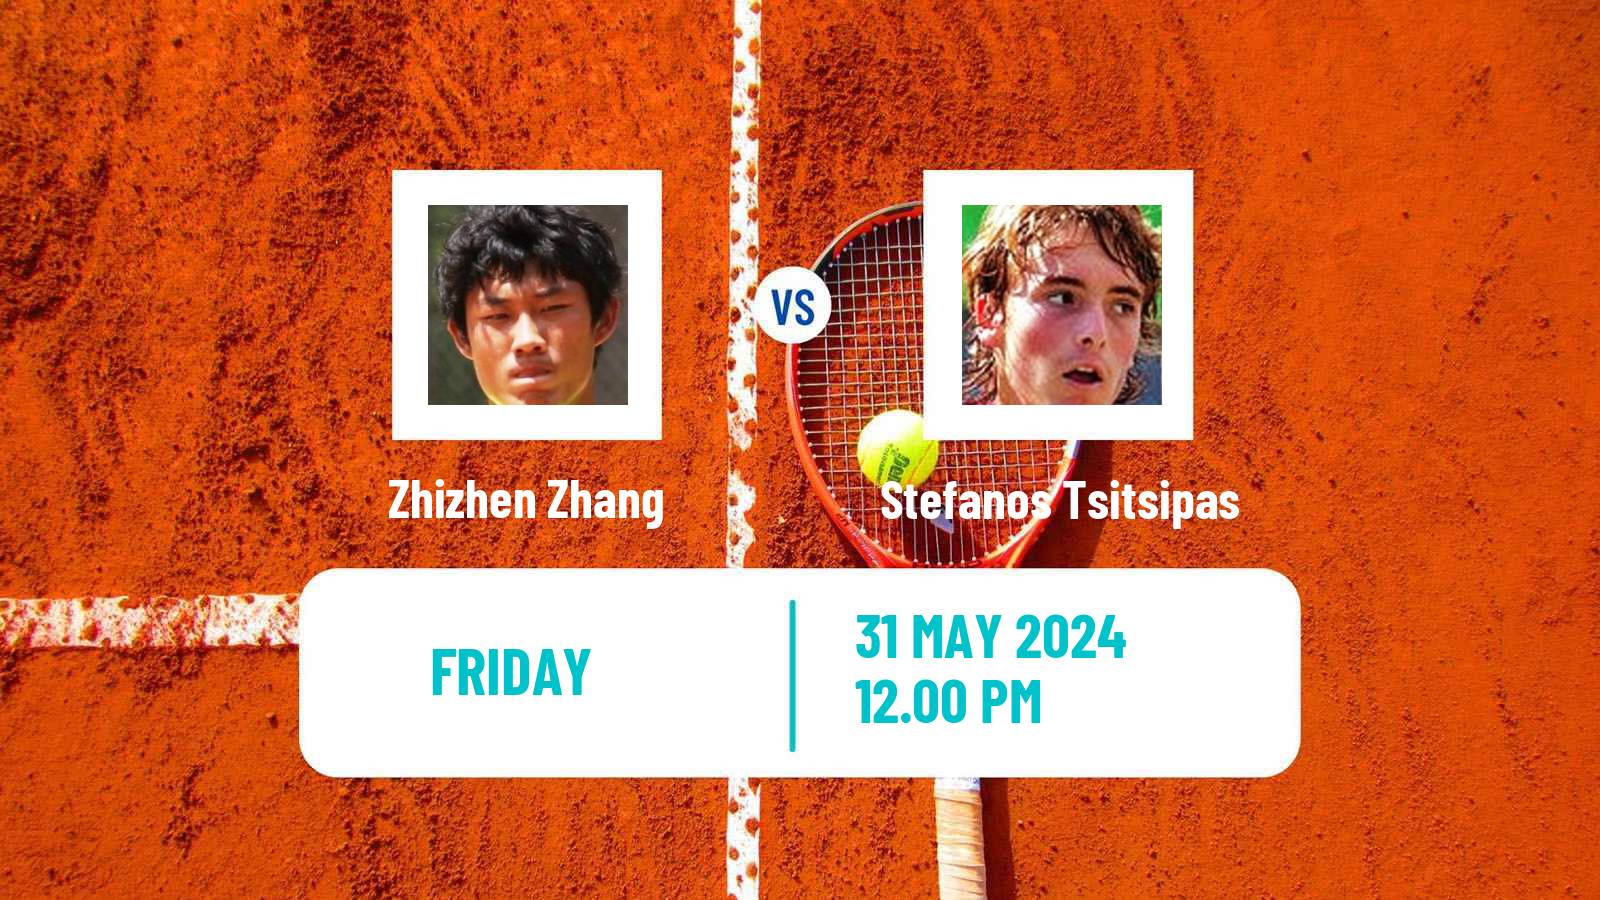 Tennis ATP Roland Garros Zhizhen Zhang - Stefanos Tsitsipas